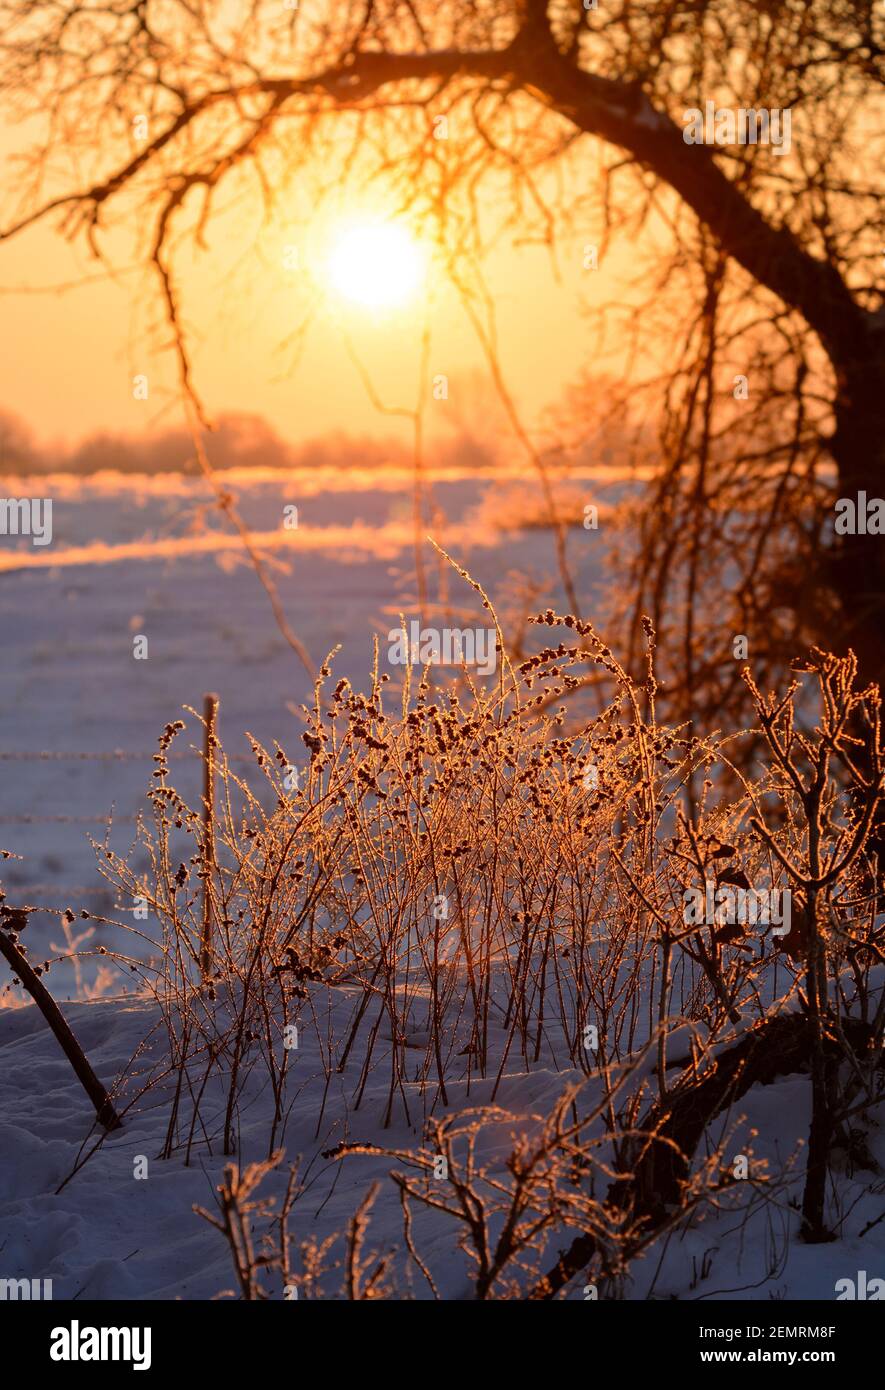 Alba su una collina nevosa in una mattina invernale estremamente fredda, con surgelati, ghiaccio coperto piccoli cespugli in primo piano; in piacevole arancione e blu a. Foto Stock